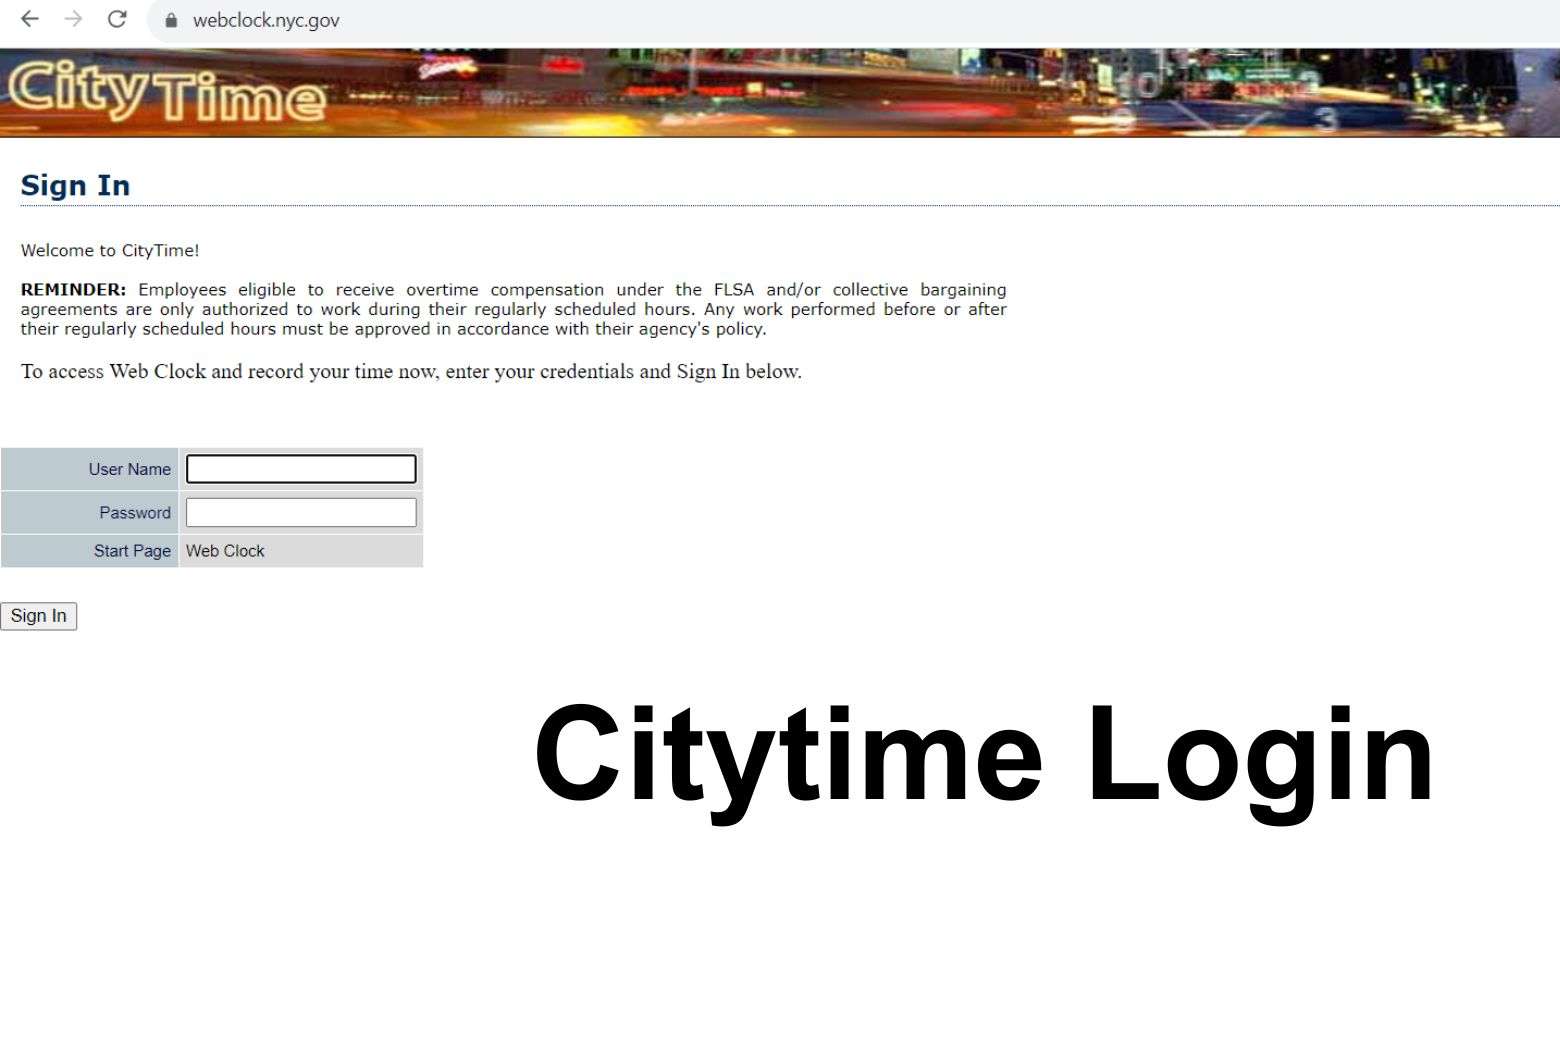 Citytime Login